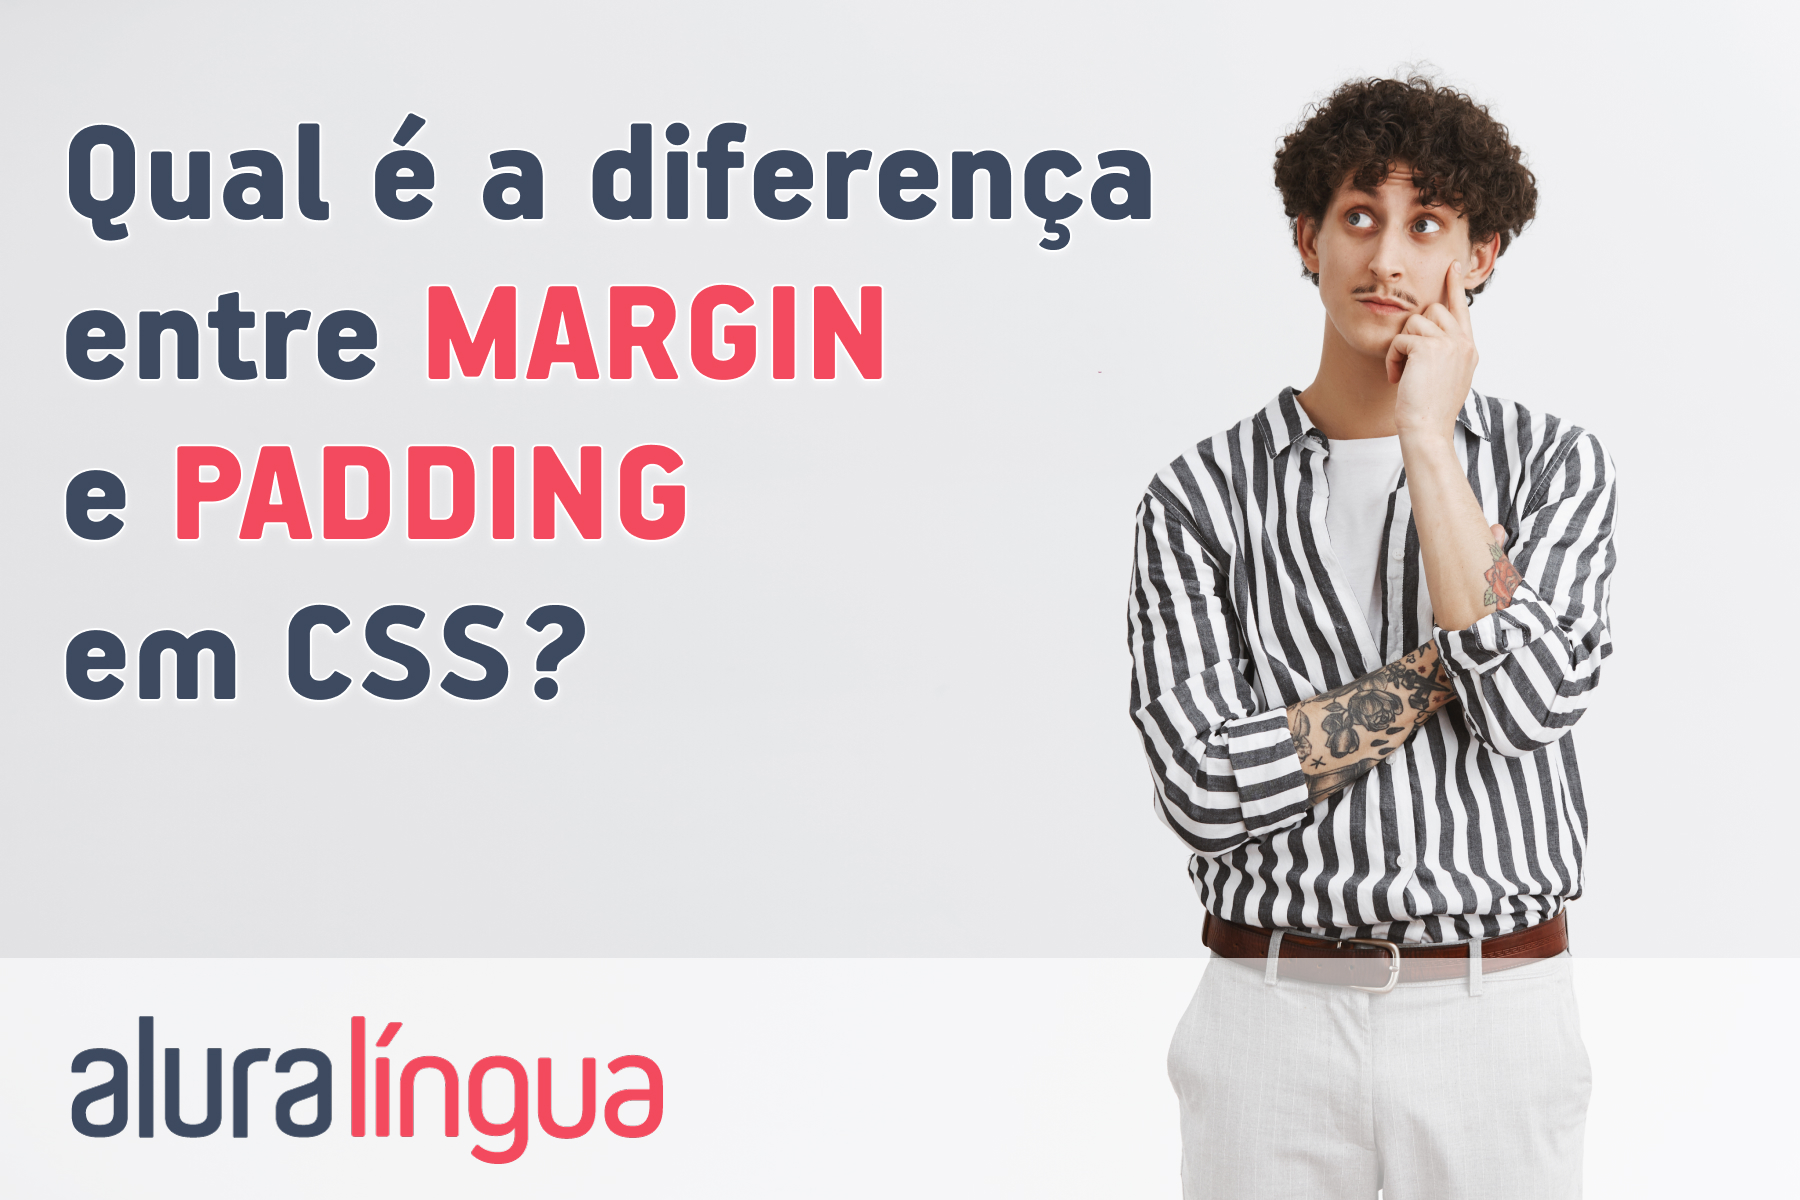 Qual é a diferença entre MARGIN e PADDING em CSS? #inset